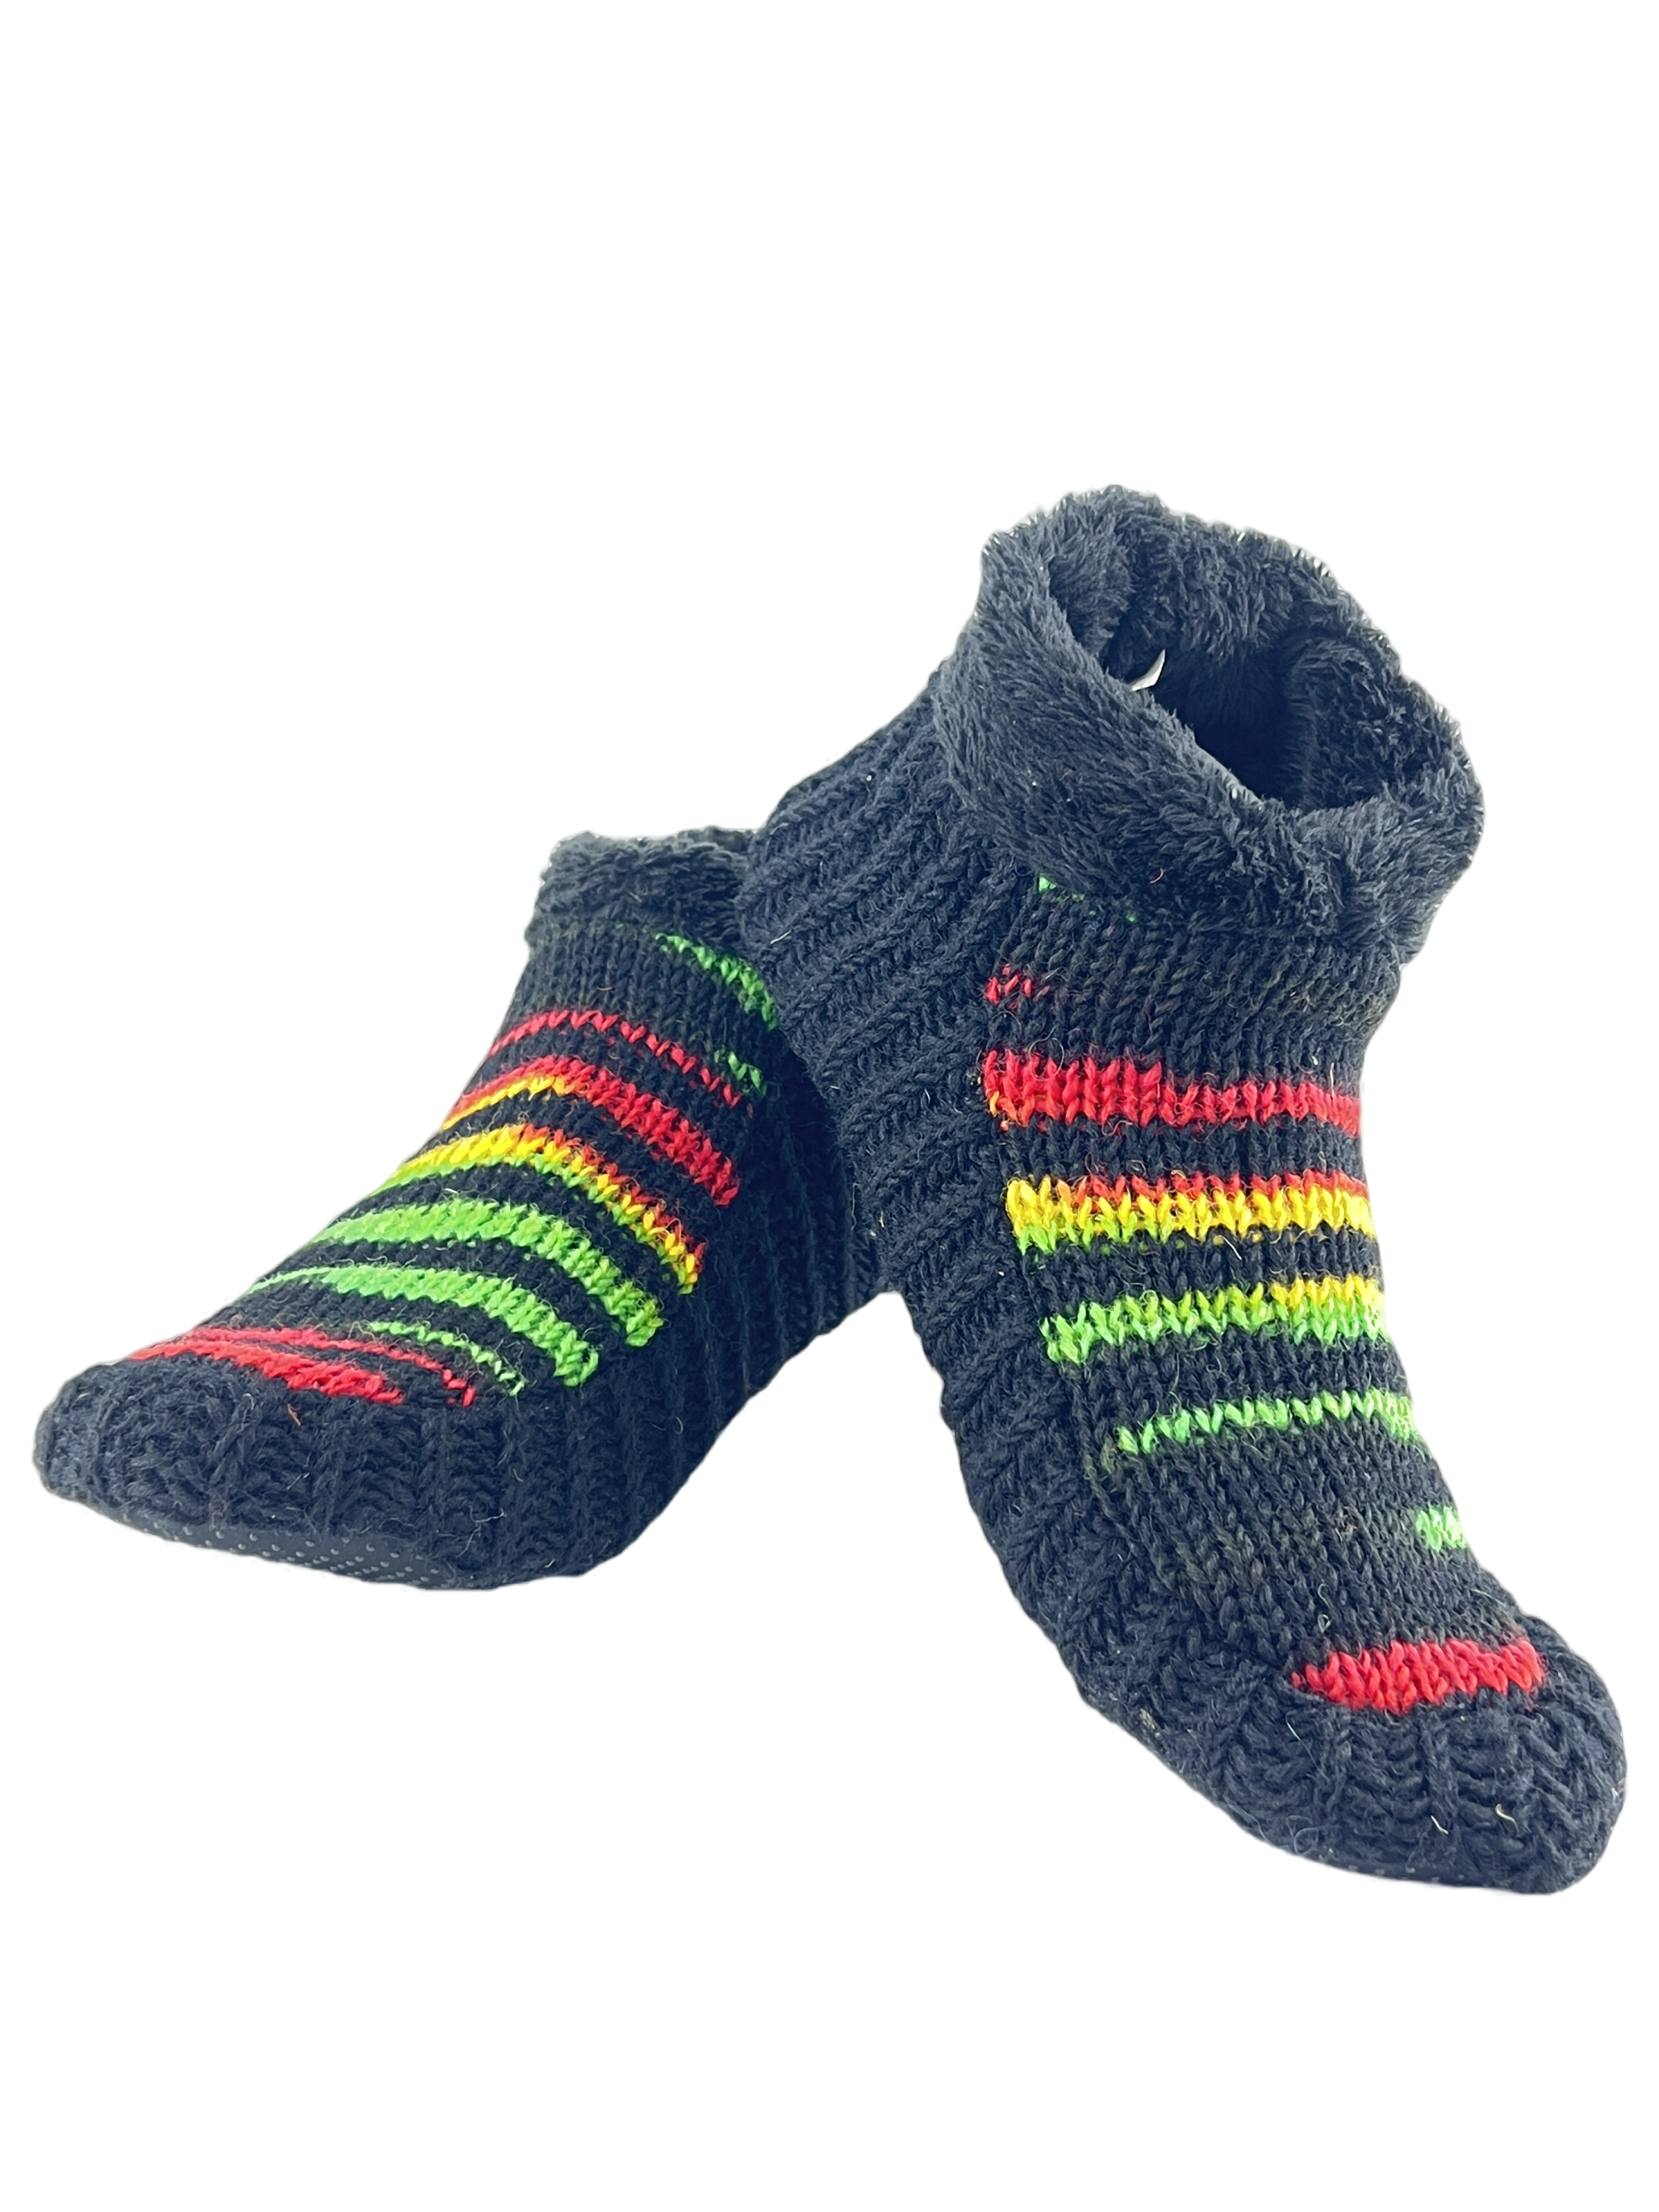 Indoor Non-slip Polar fur Wool Slippers  | Cozy Knitted Slipper Socks for Winters | Cute Ankle Length House Slippers for Men & Women